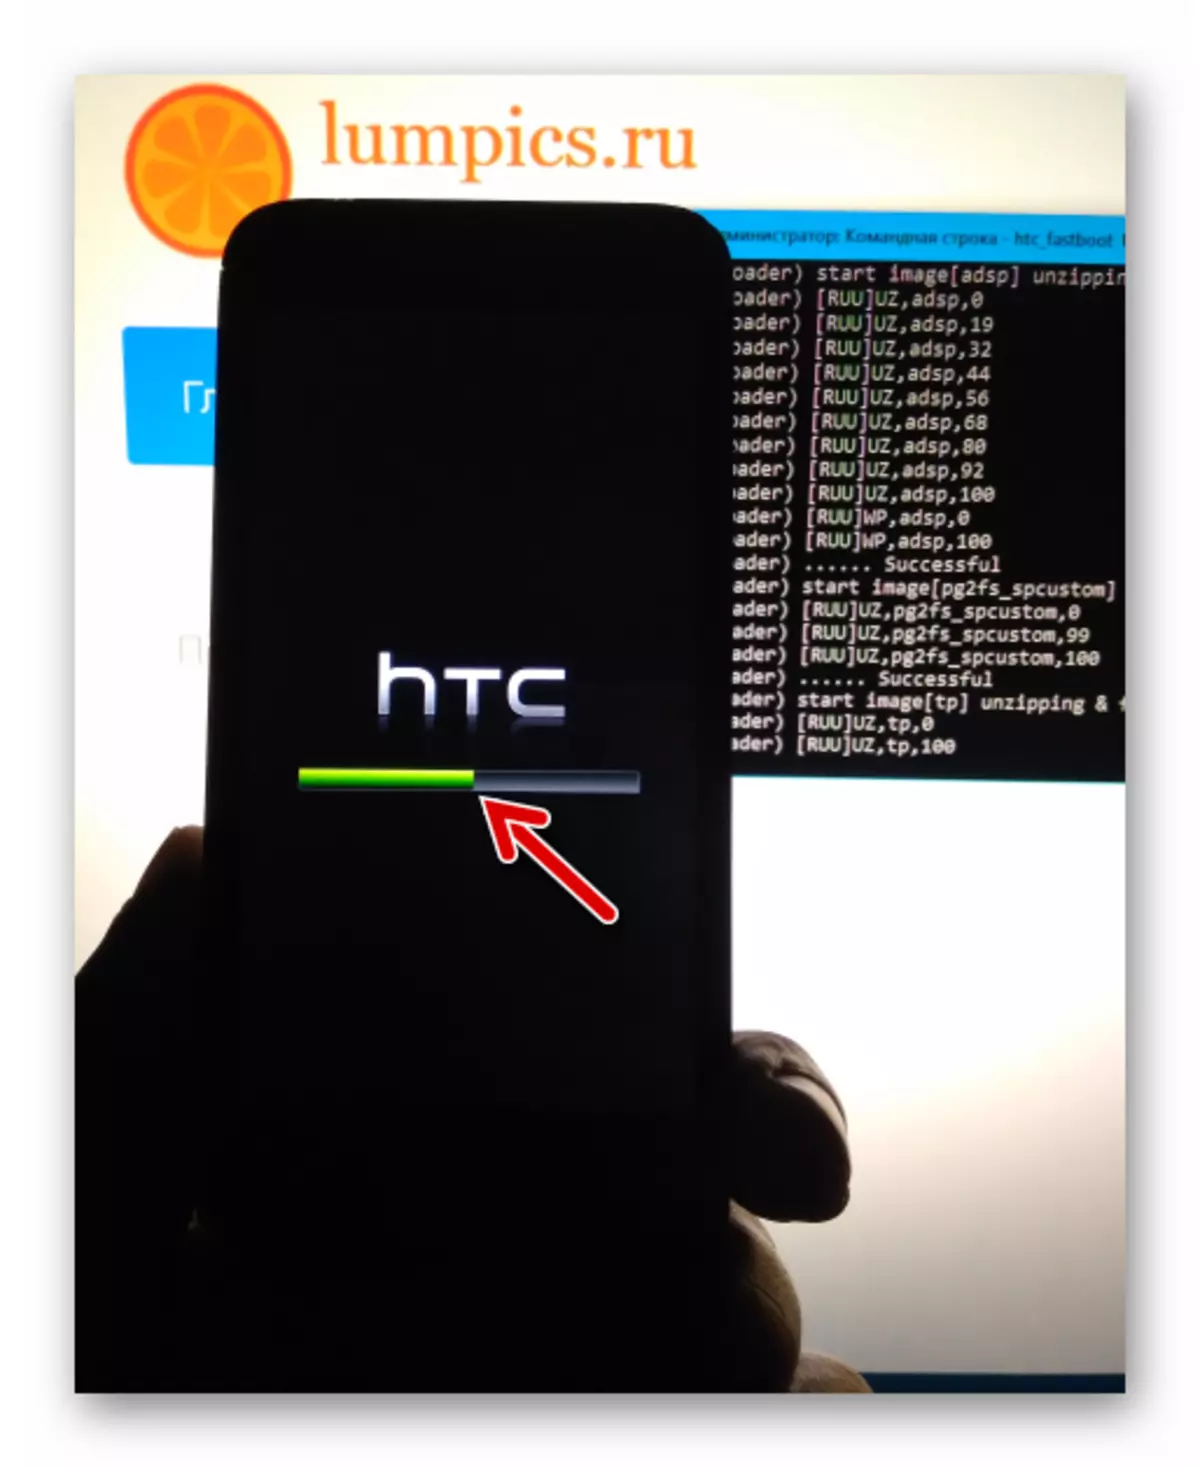 HTC Desire 601 henrettelse indikatoren på enhedens skærm under firmware via fastboot